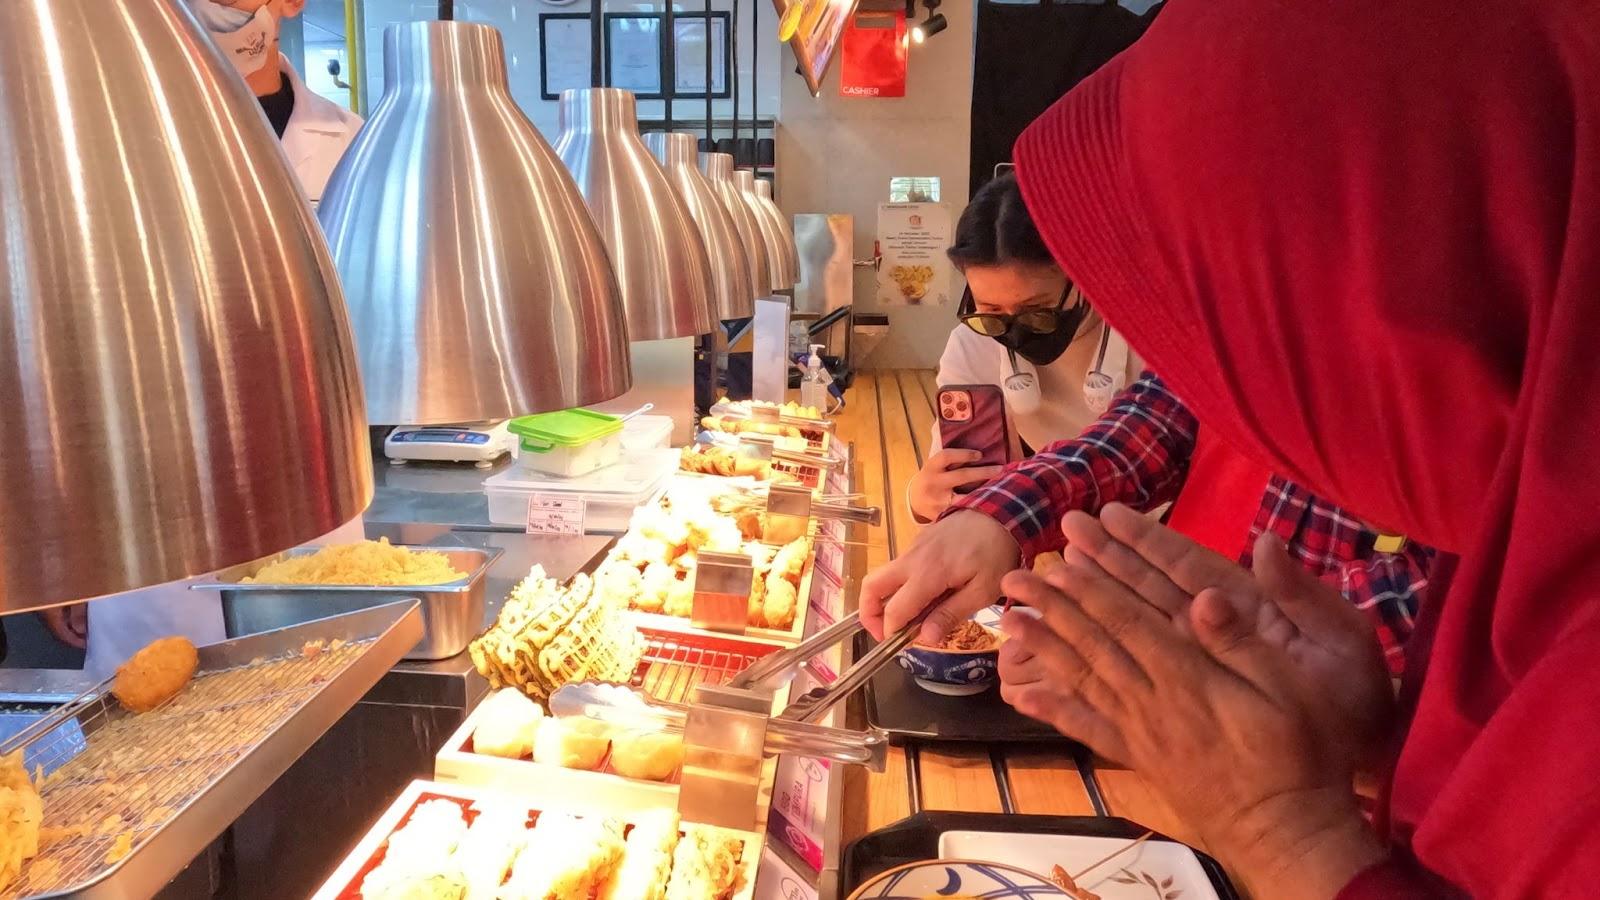 Selain menu udon, tersedia aneka menu pendamping. Seperti ragam tempura dan makanan penutup bercita rasa manis. (Foto: Dok. Pribadi Penulis)